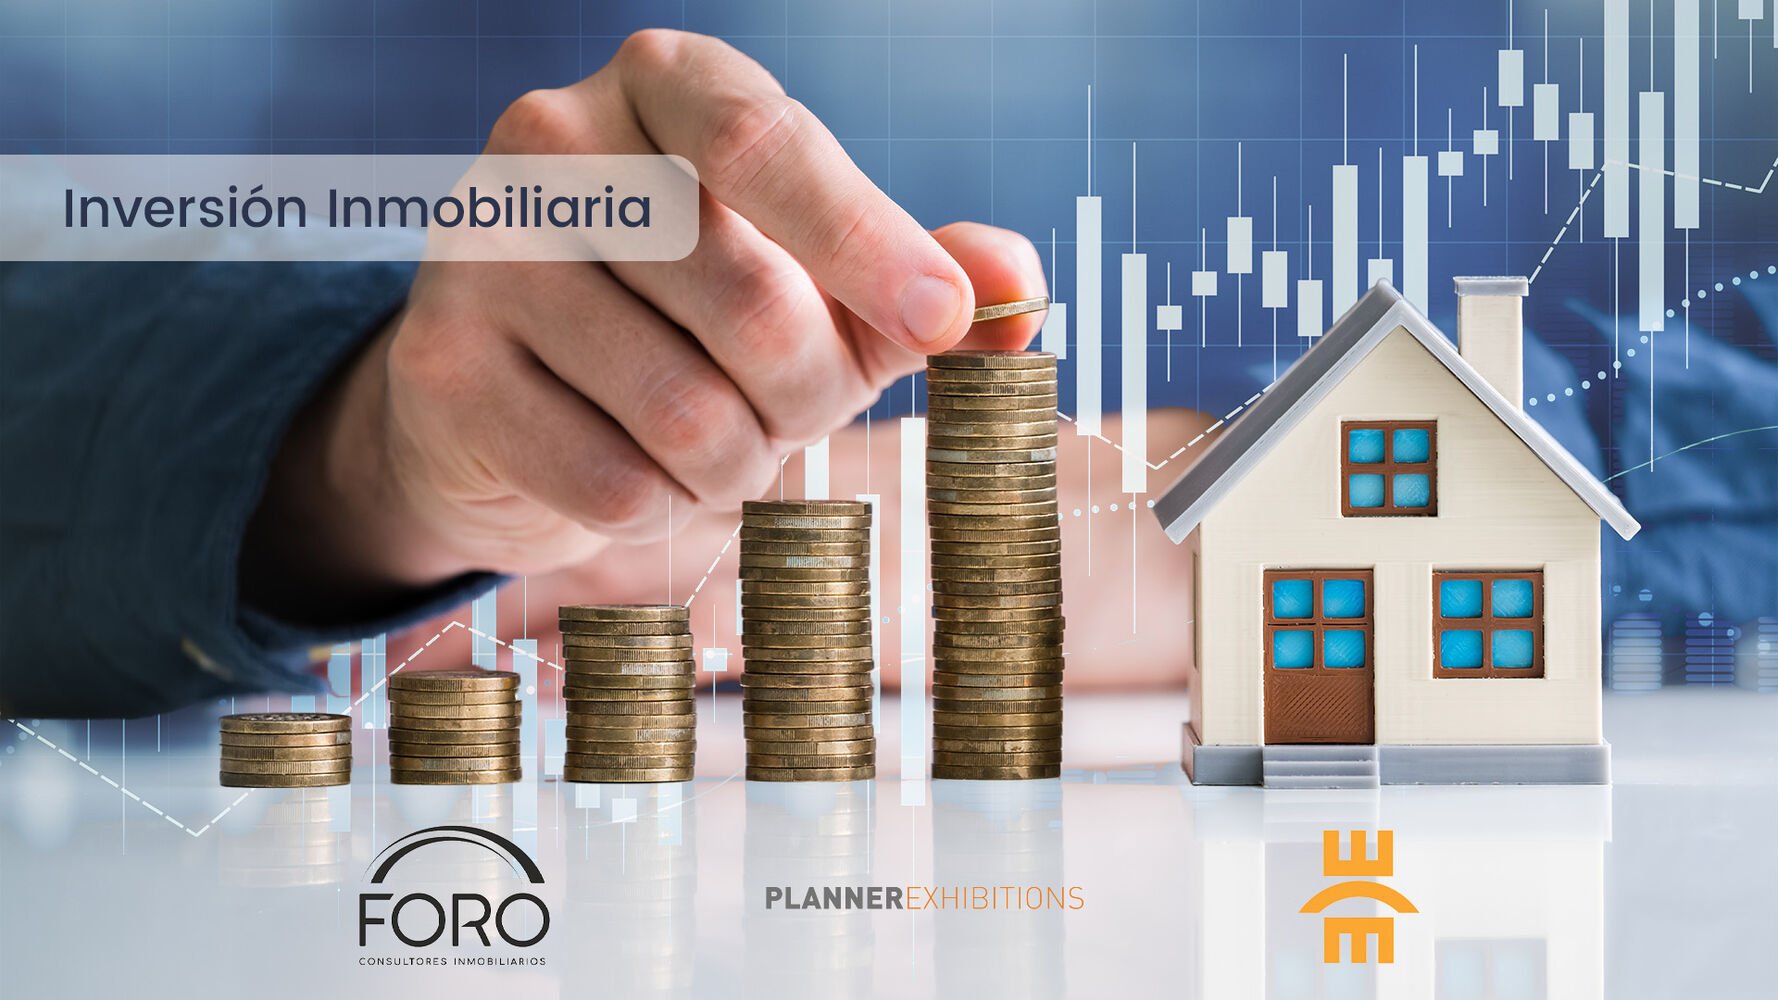 Precios en alza y oferta limitada: desafíos del mercado de vivienda en España